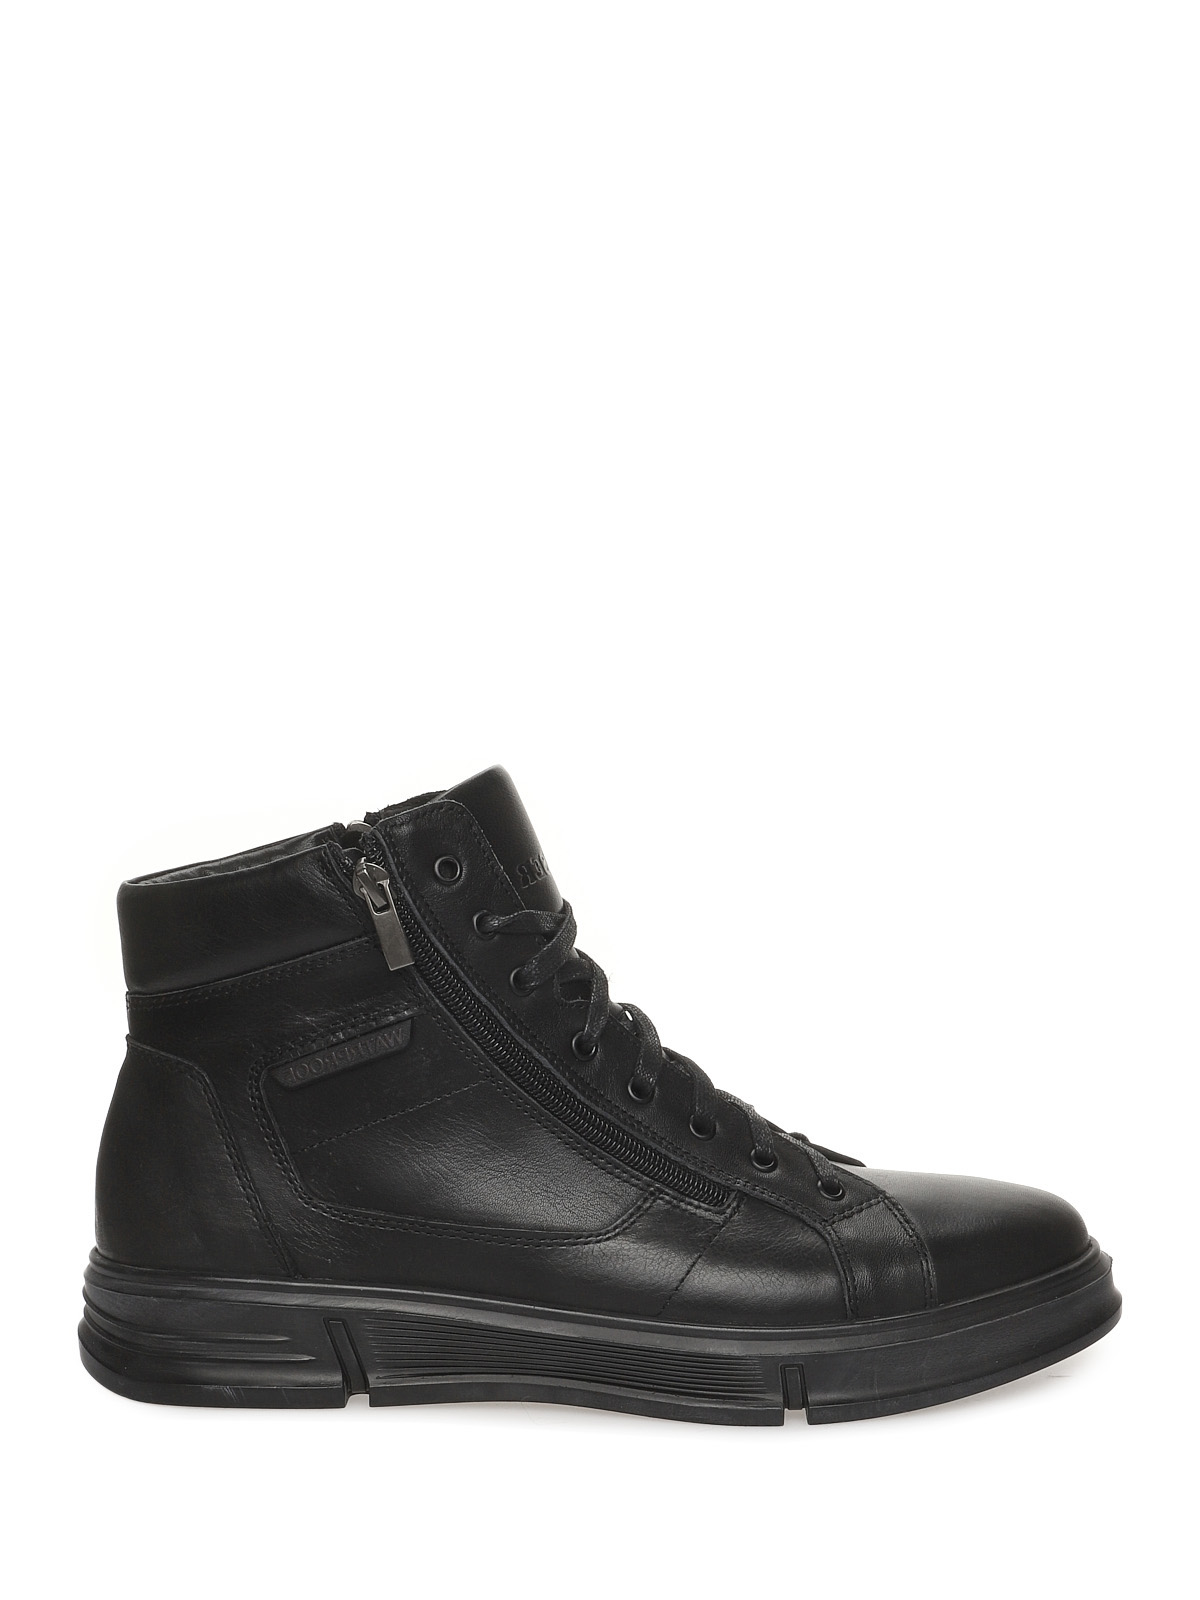 

Ботинки мужские VALSER черные 45 RU, Черный, 601-1051M